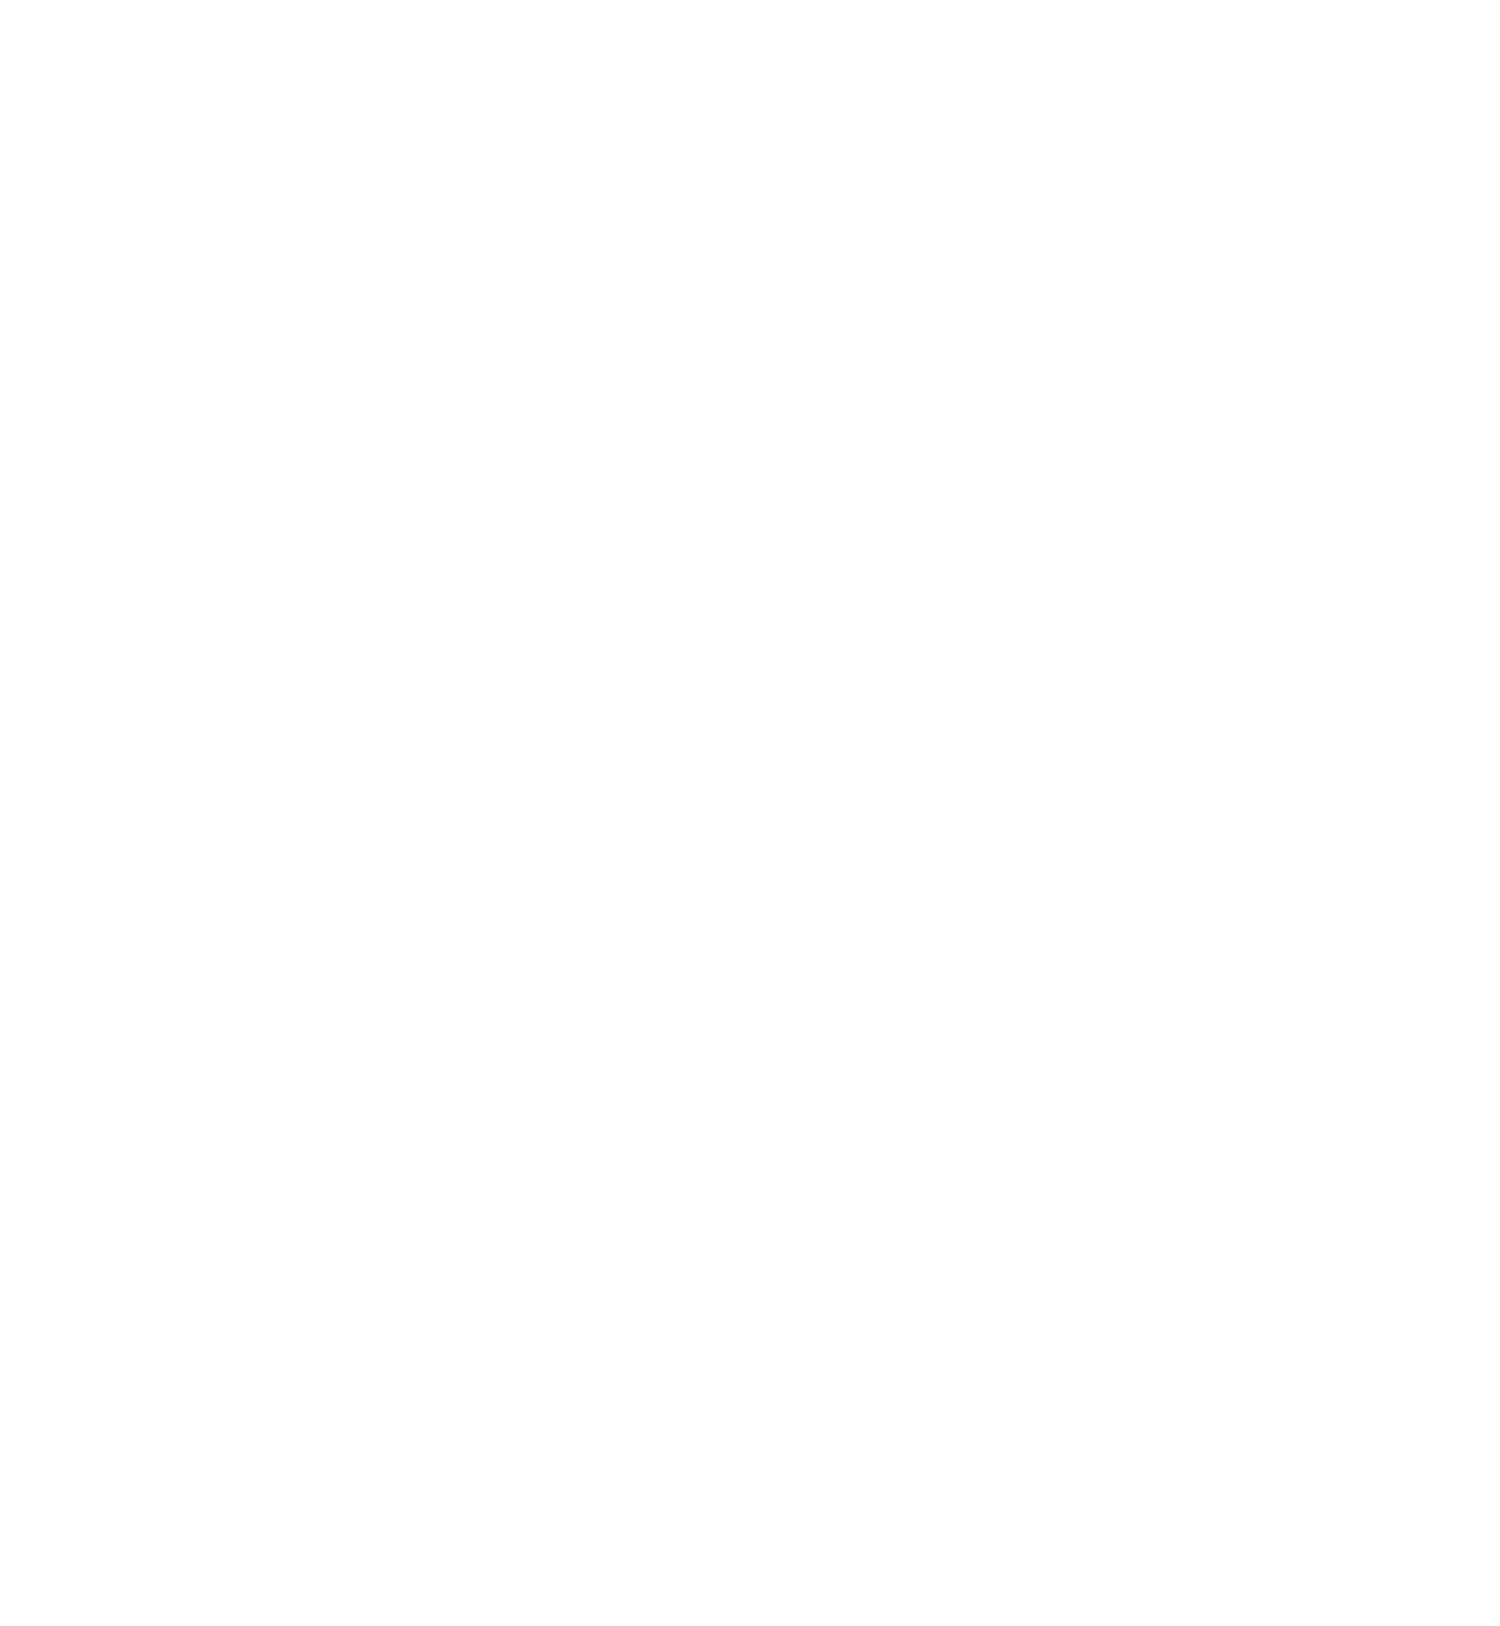 BARN GLOBAL NETWORK